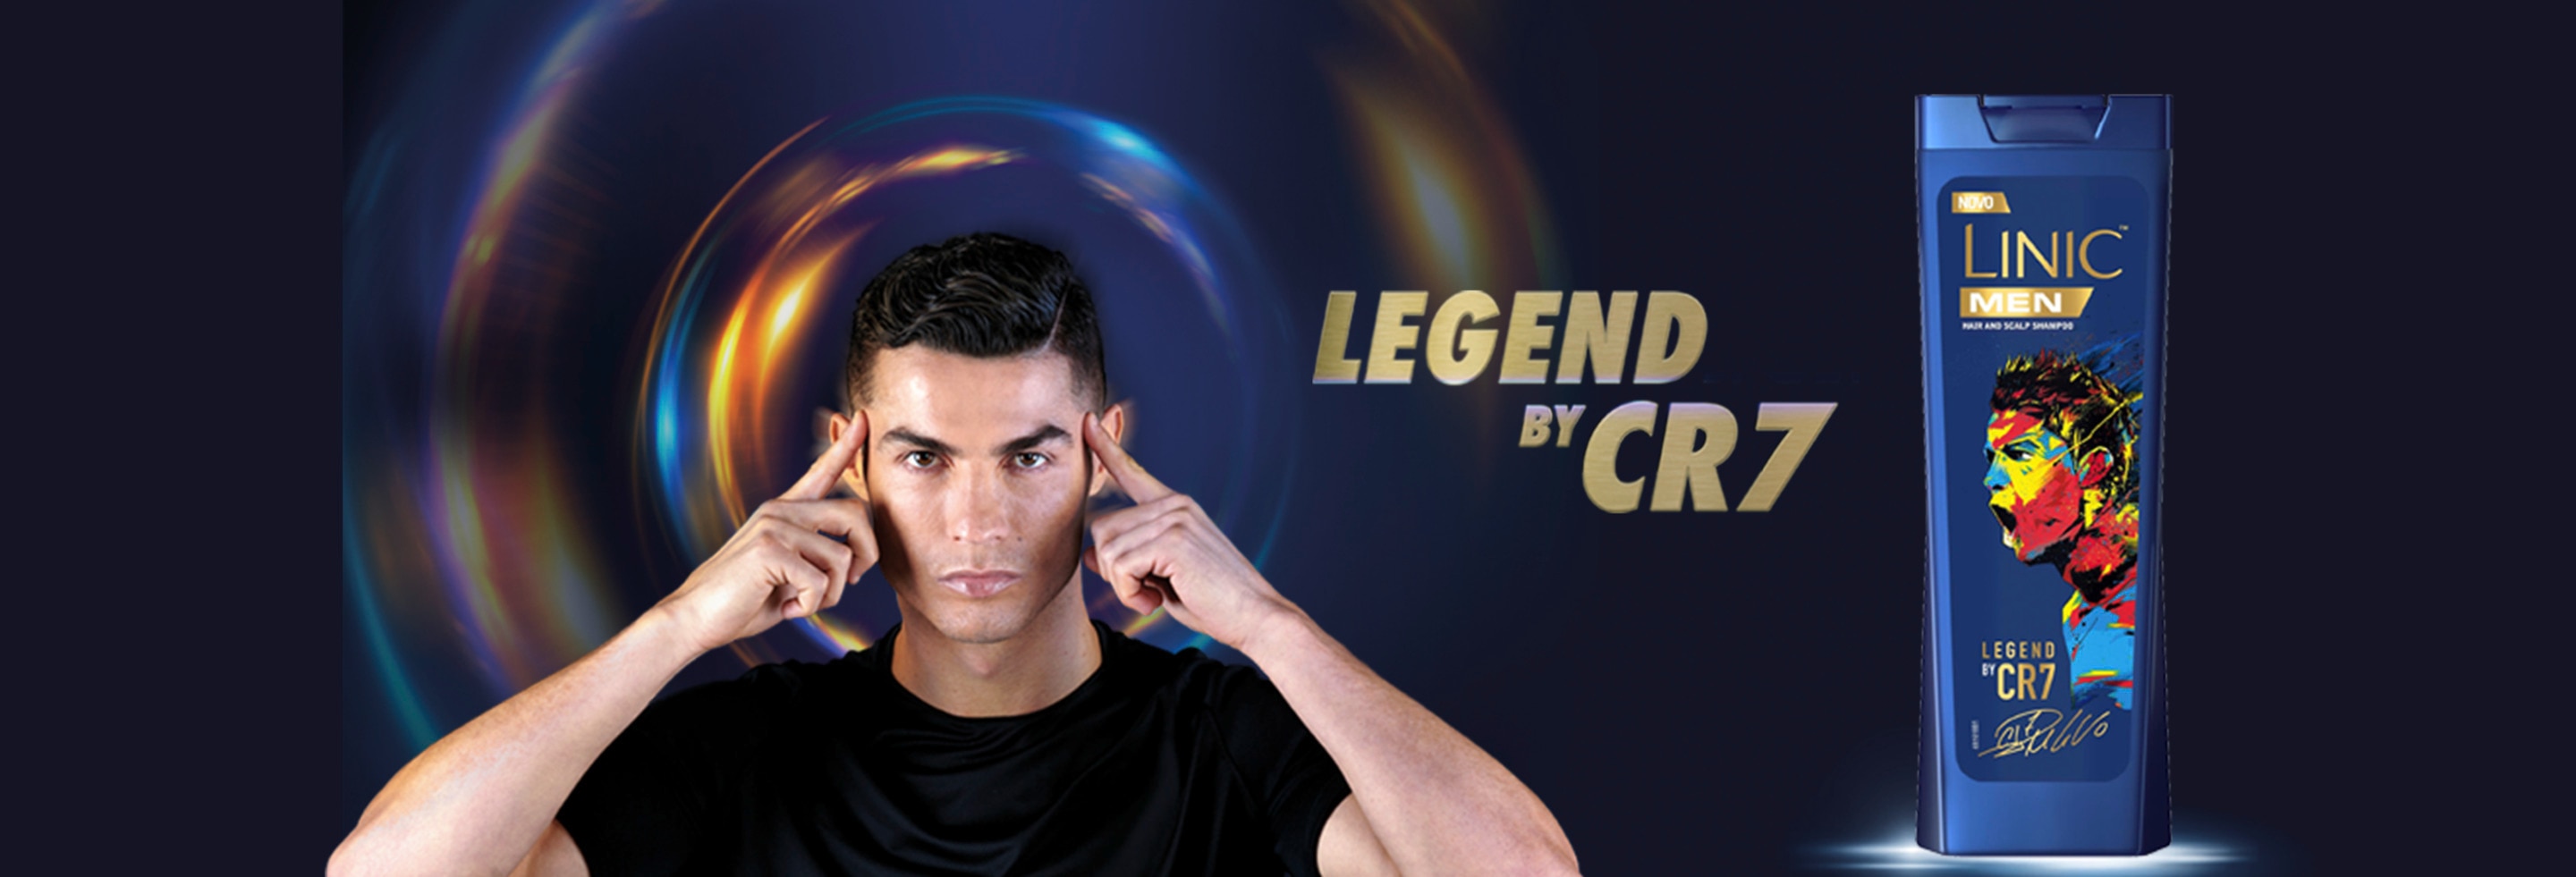 Cristiano Ronaldo Criou um Champô Imbatível com Linic